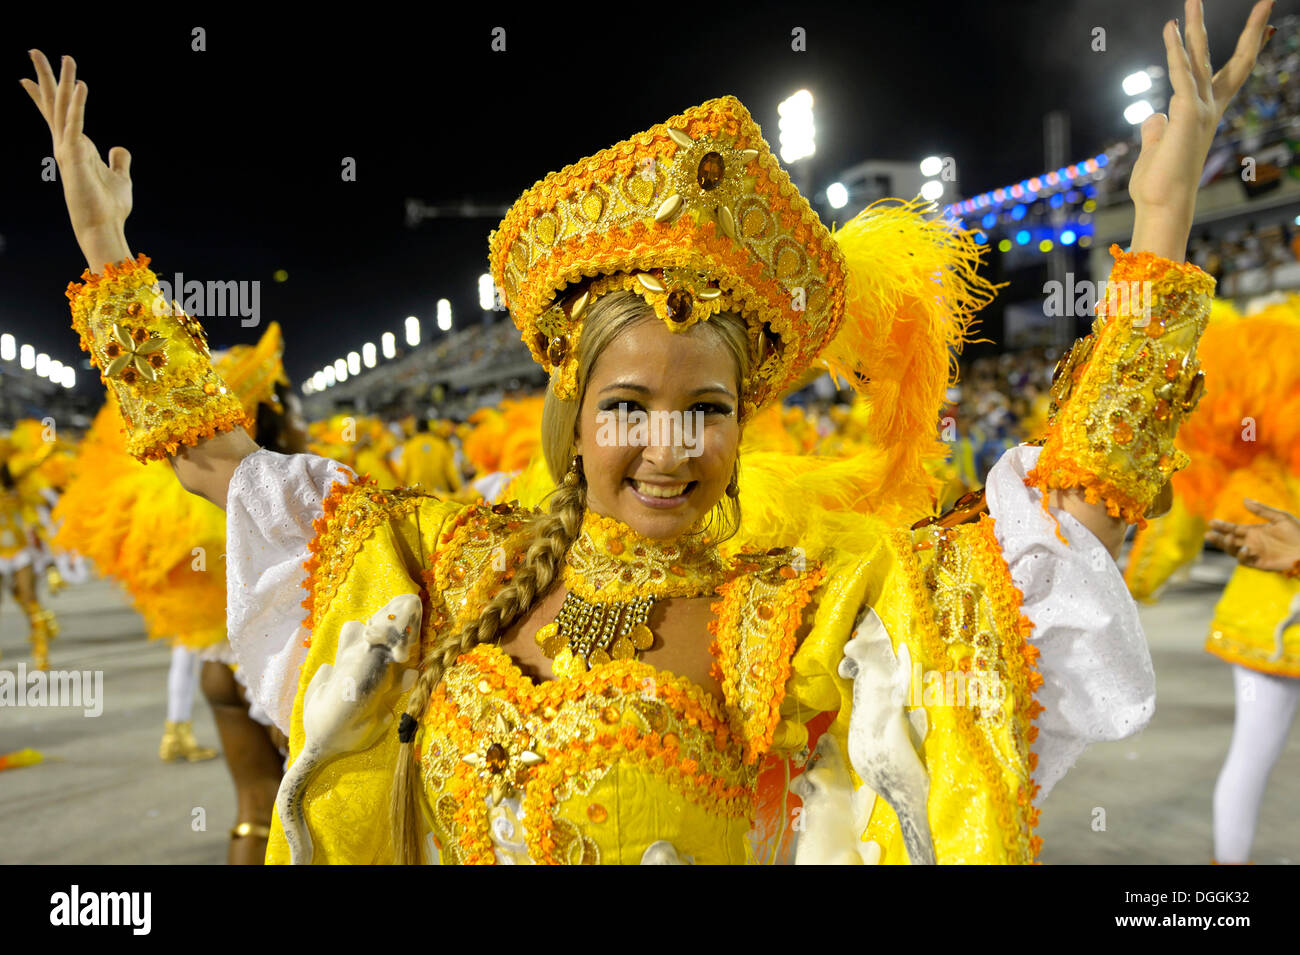 Fenmale danseur de samba, défilé de l'école de samba Unidos da Tijuca, le thème 'Allemagne' enchantée, Sambódromo, Rio de Janeiro Banque D'Images